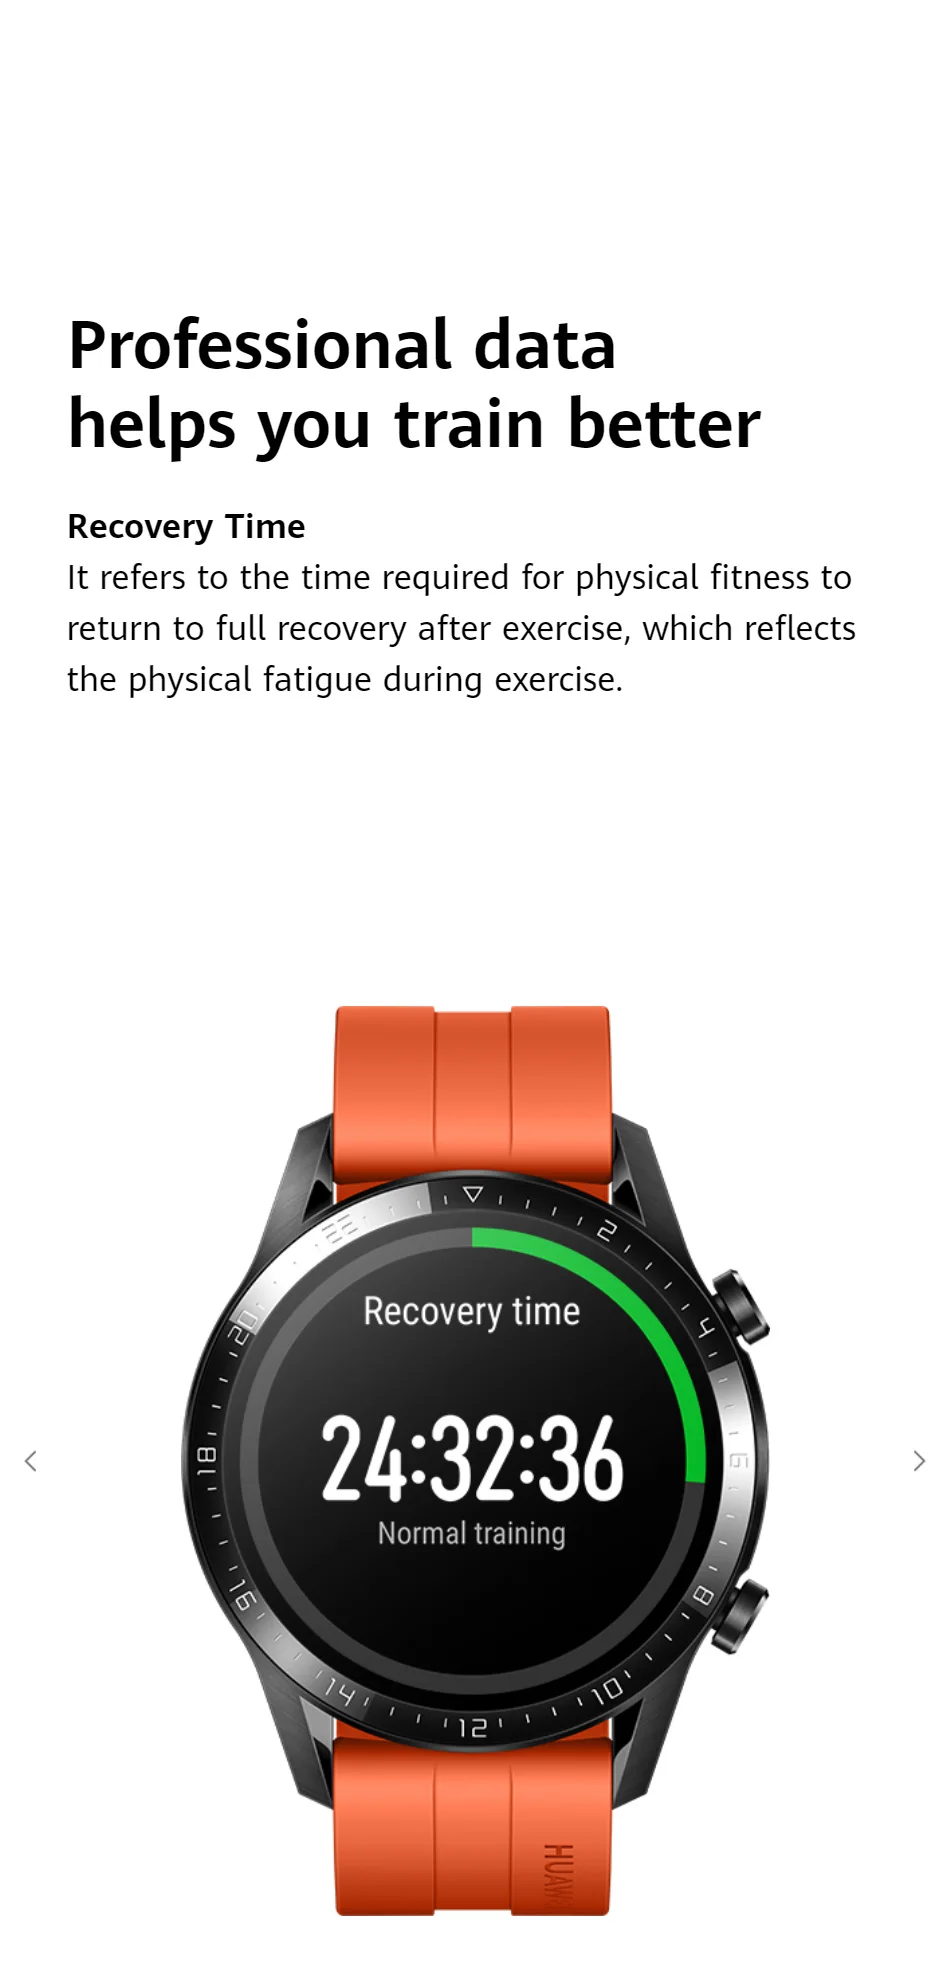 Предоплата оригинальные часы huawei GT 2 Исследуйте больше Kirin A1 длительный срок службы батареи умные спортивные режимы помощник по жизни